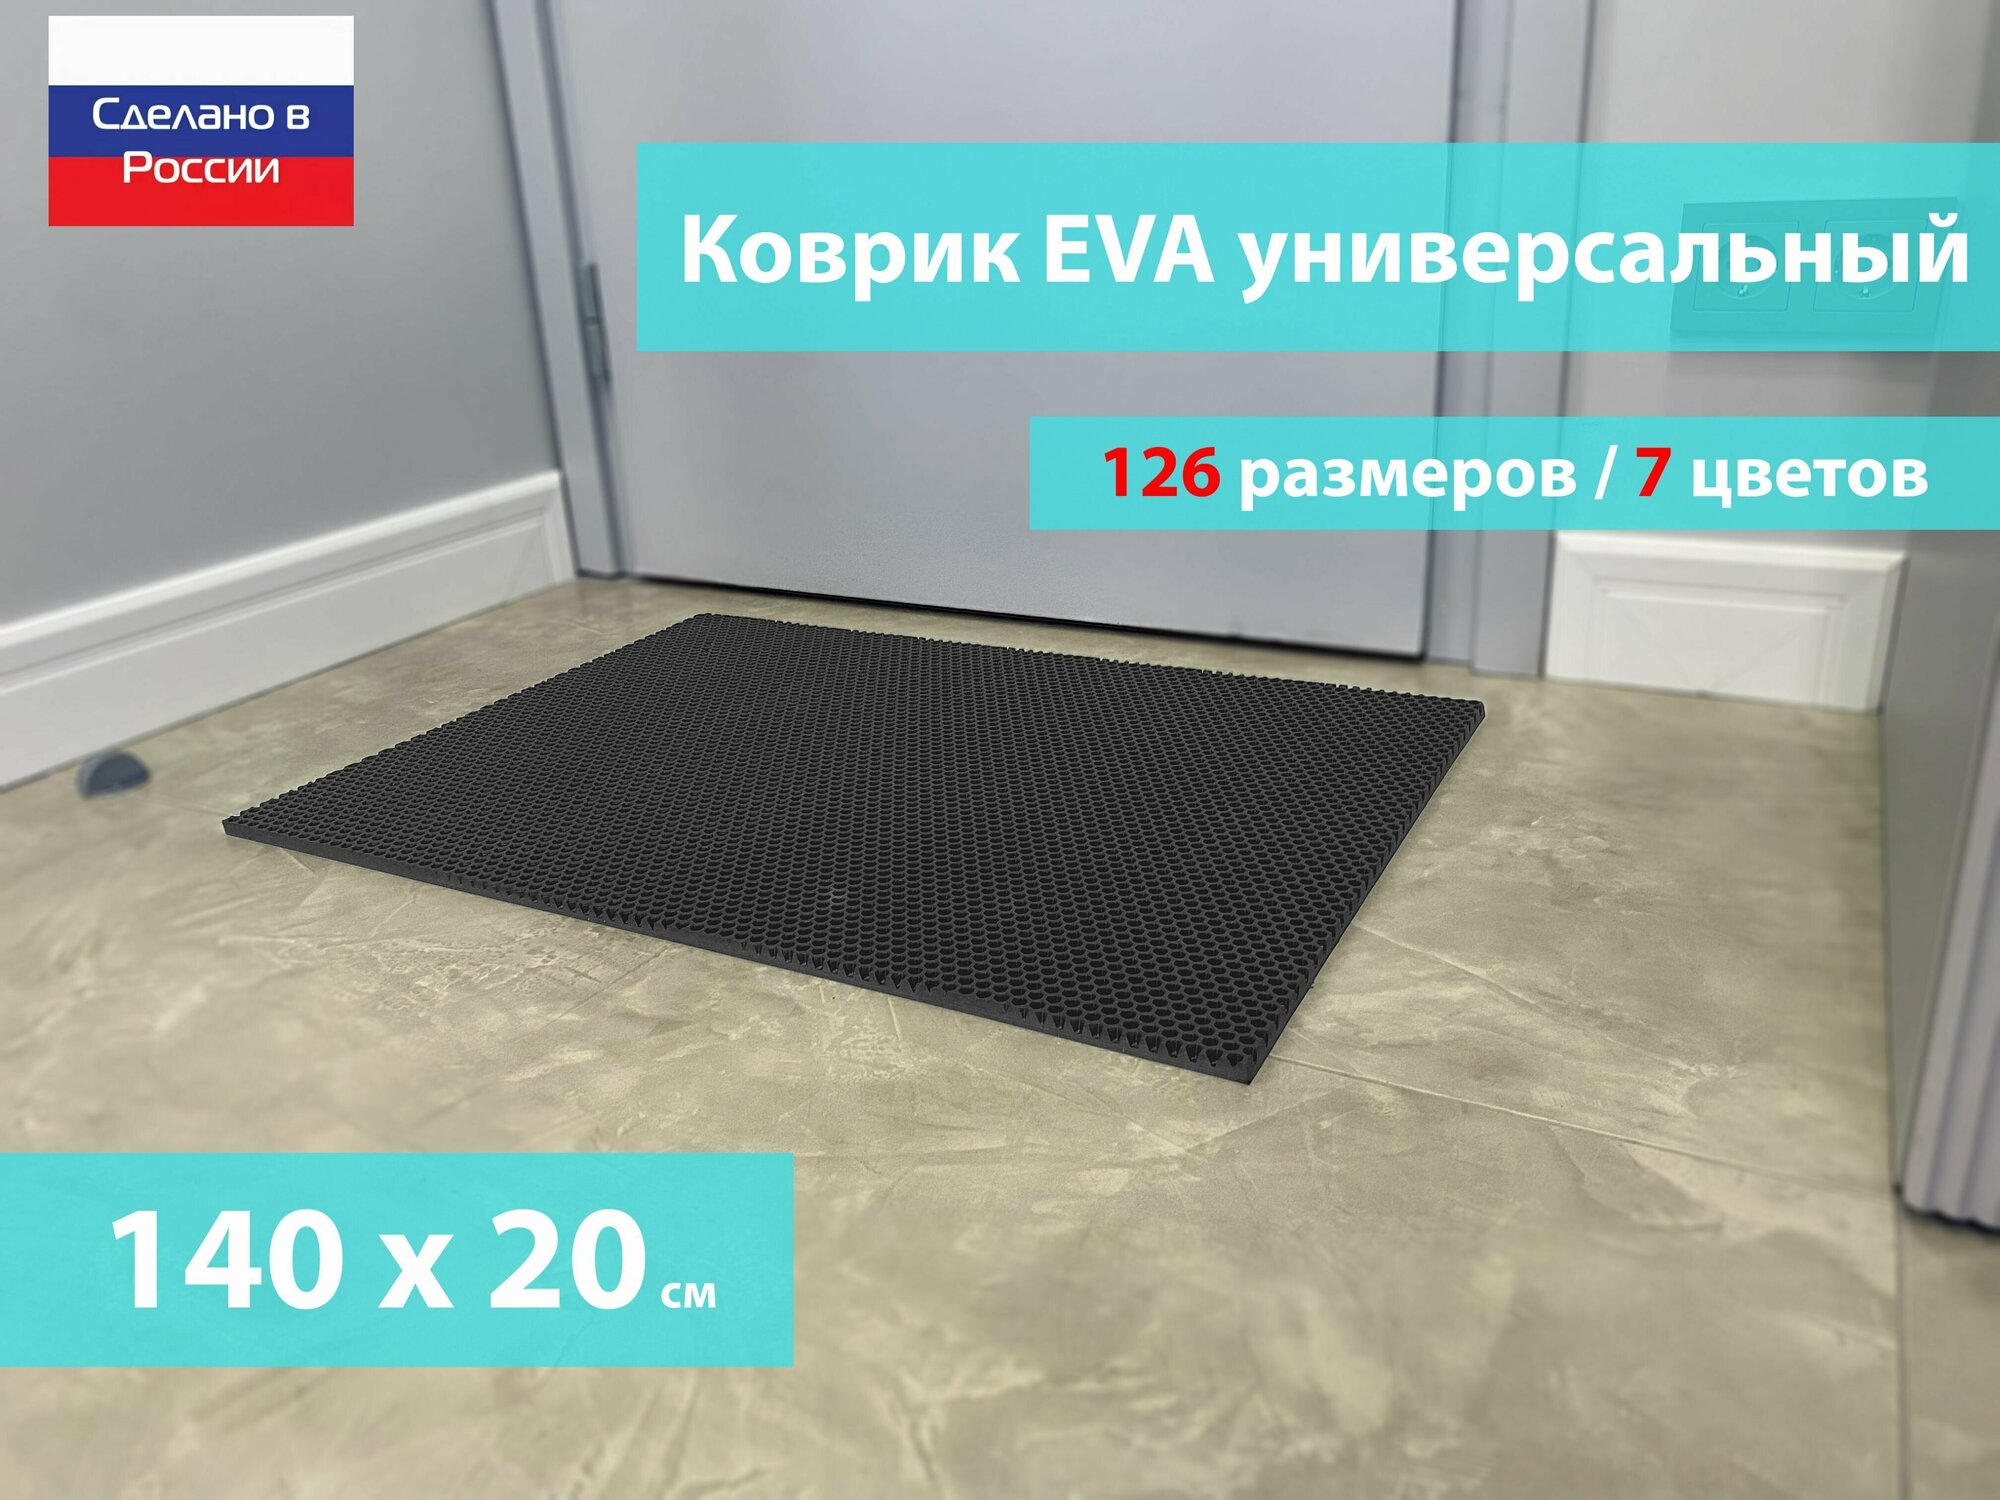 Коврик придверный EVA (ЕВА) в прихожую для обуви / Ковер ЭВА на пол перед дверью/ серый / размер 140 х 20 см